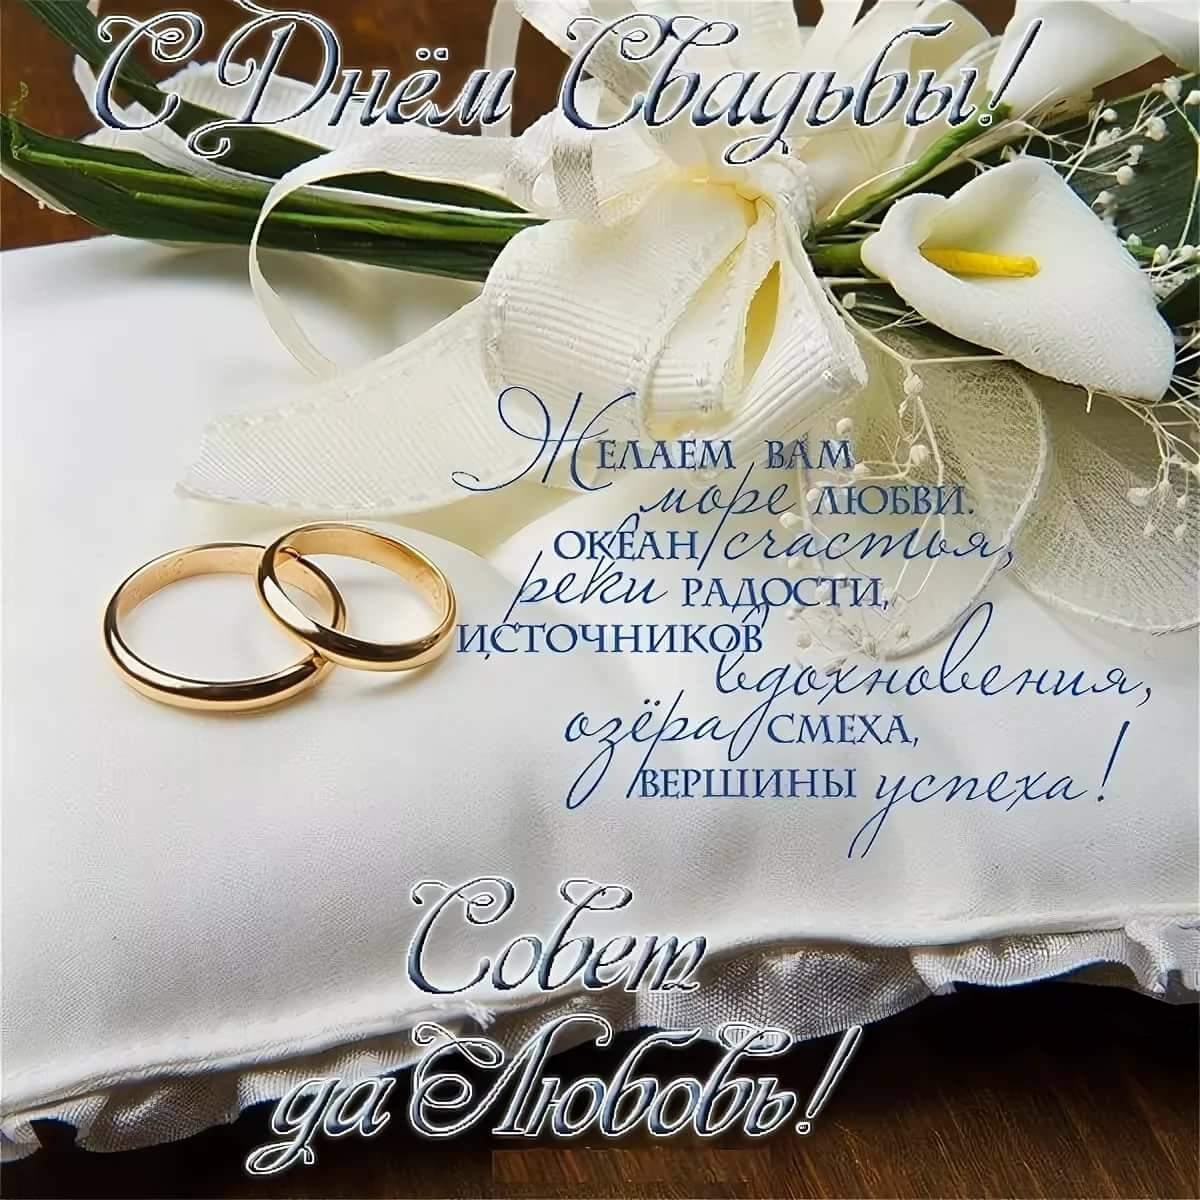 Поздравления на свадьбу в прозе